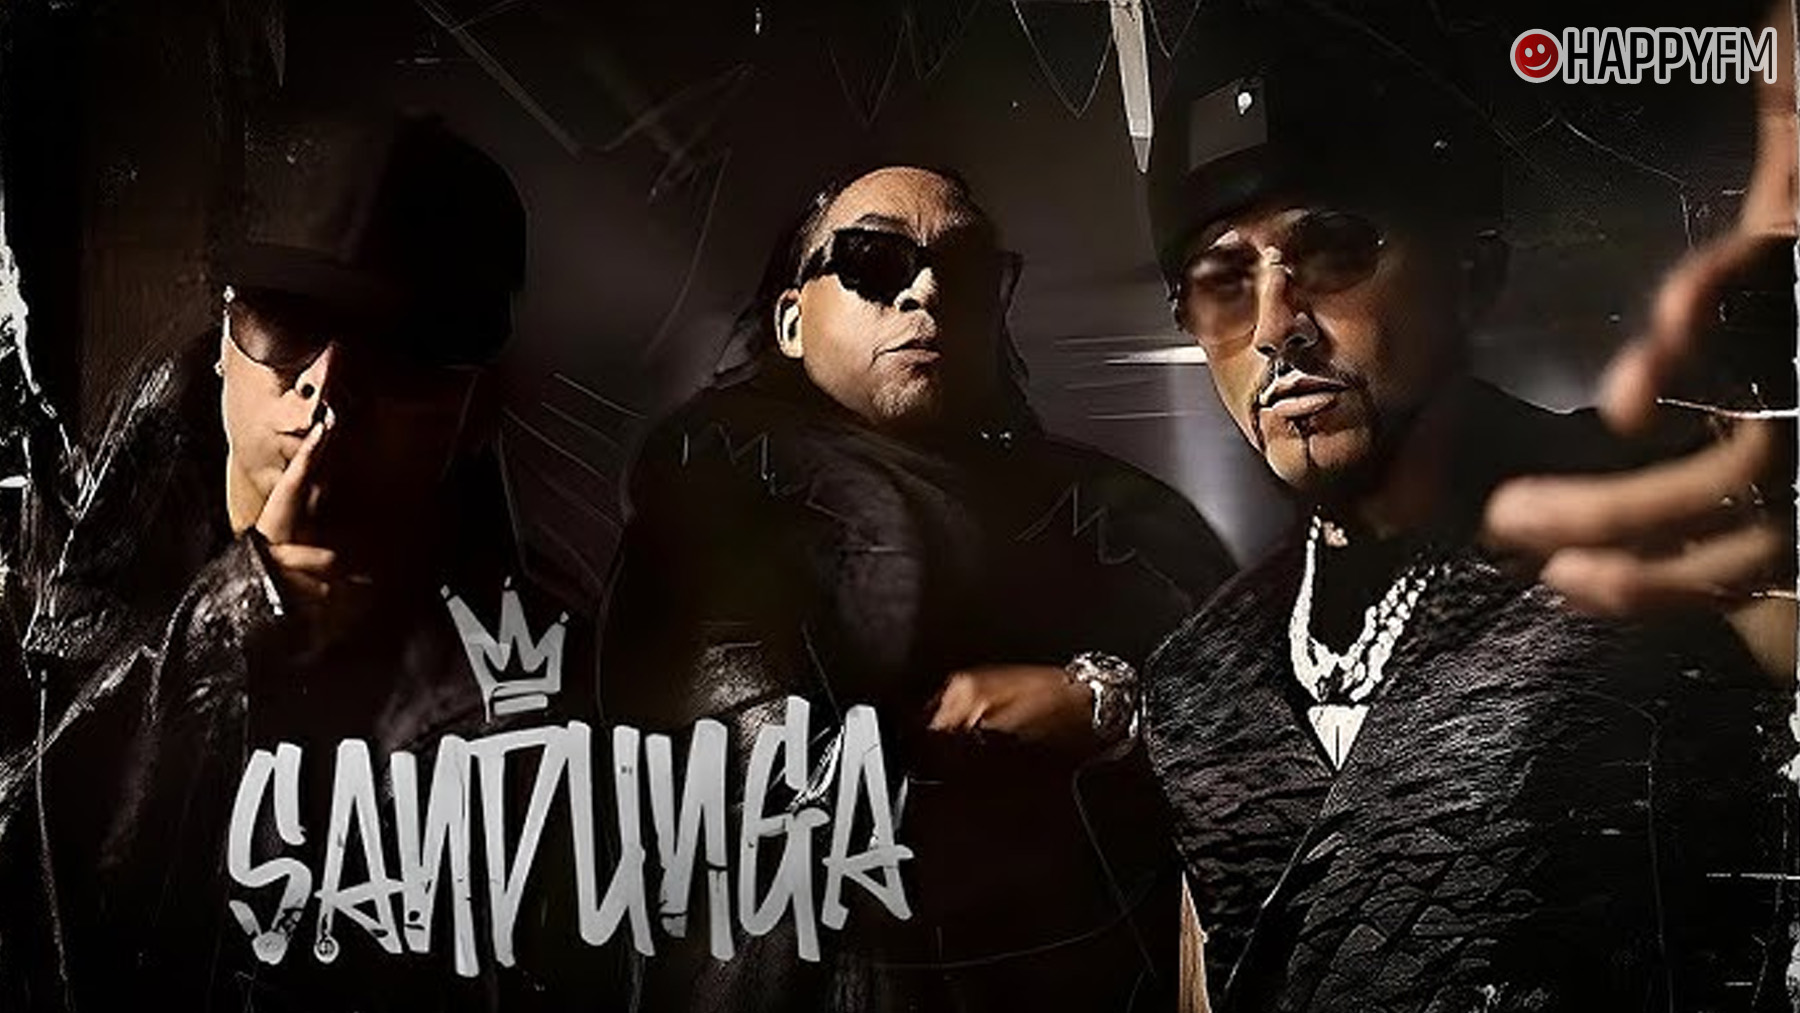 ‘Sandunga’, de Don Omar, Wisin y Yandel: letra y vídeo